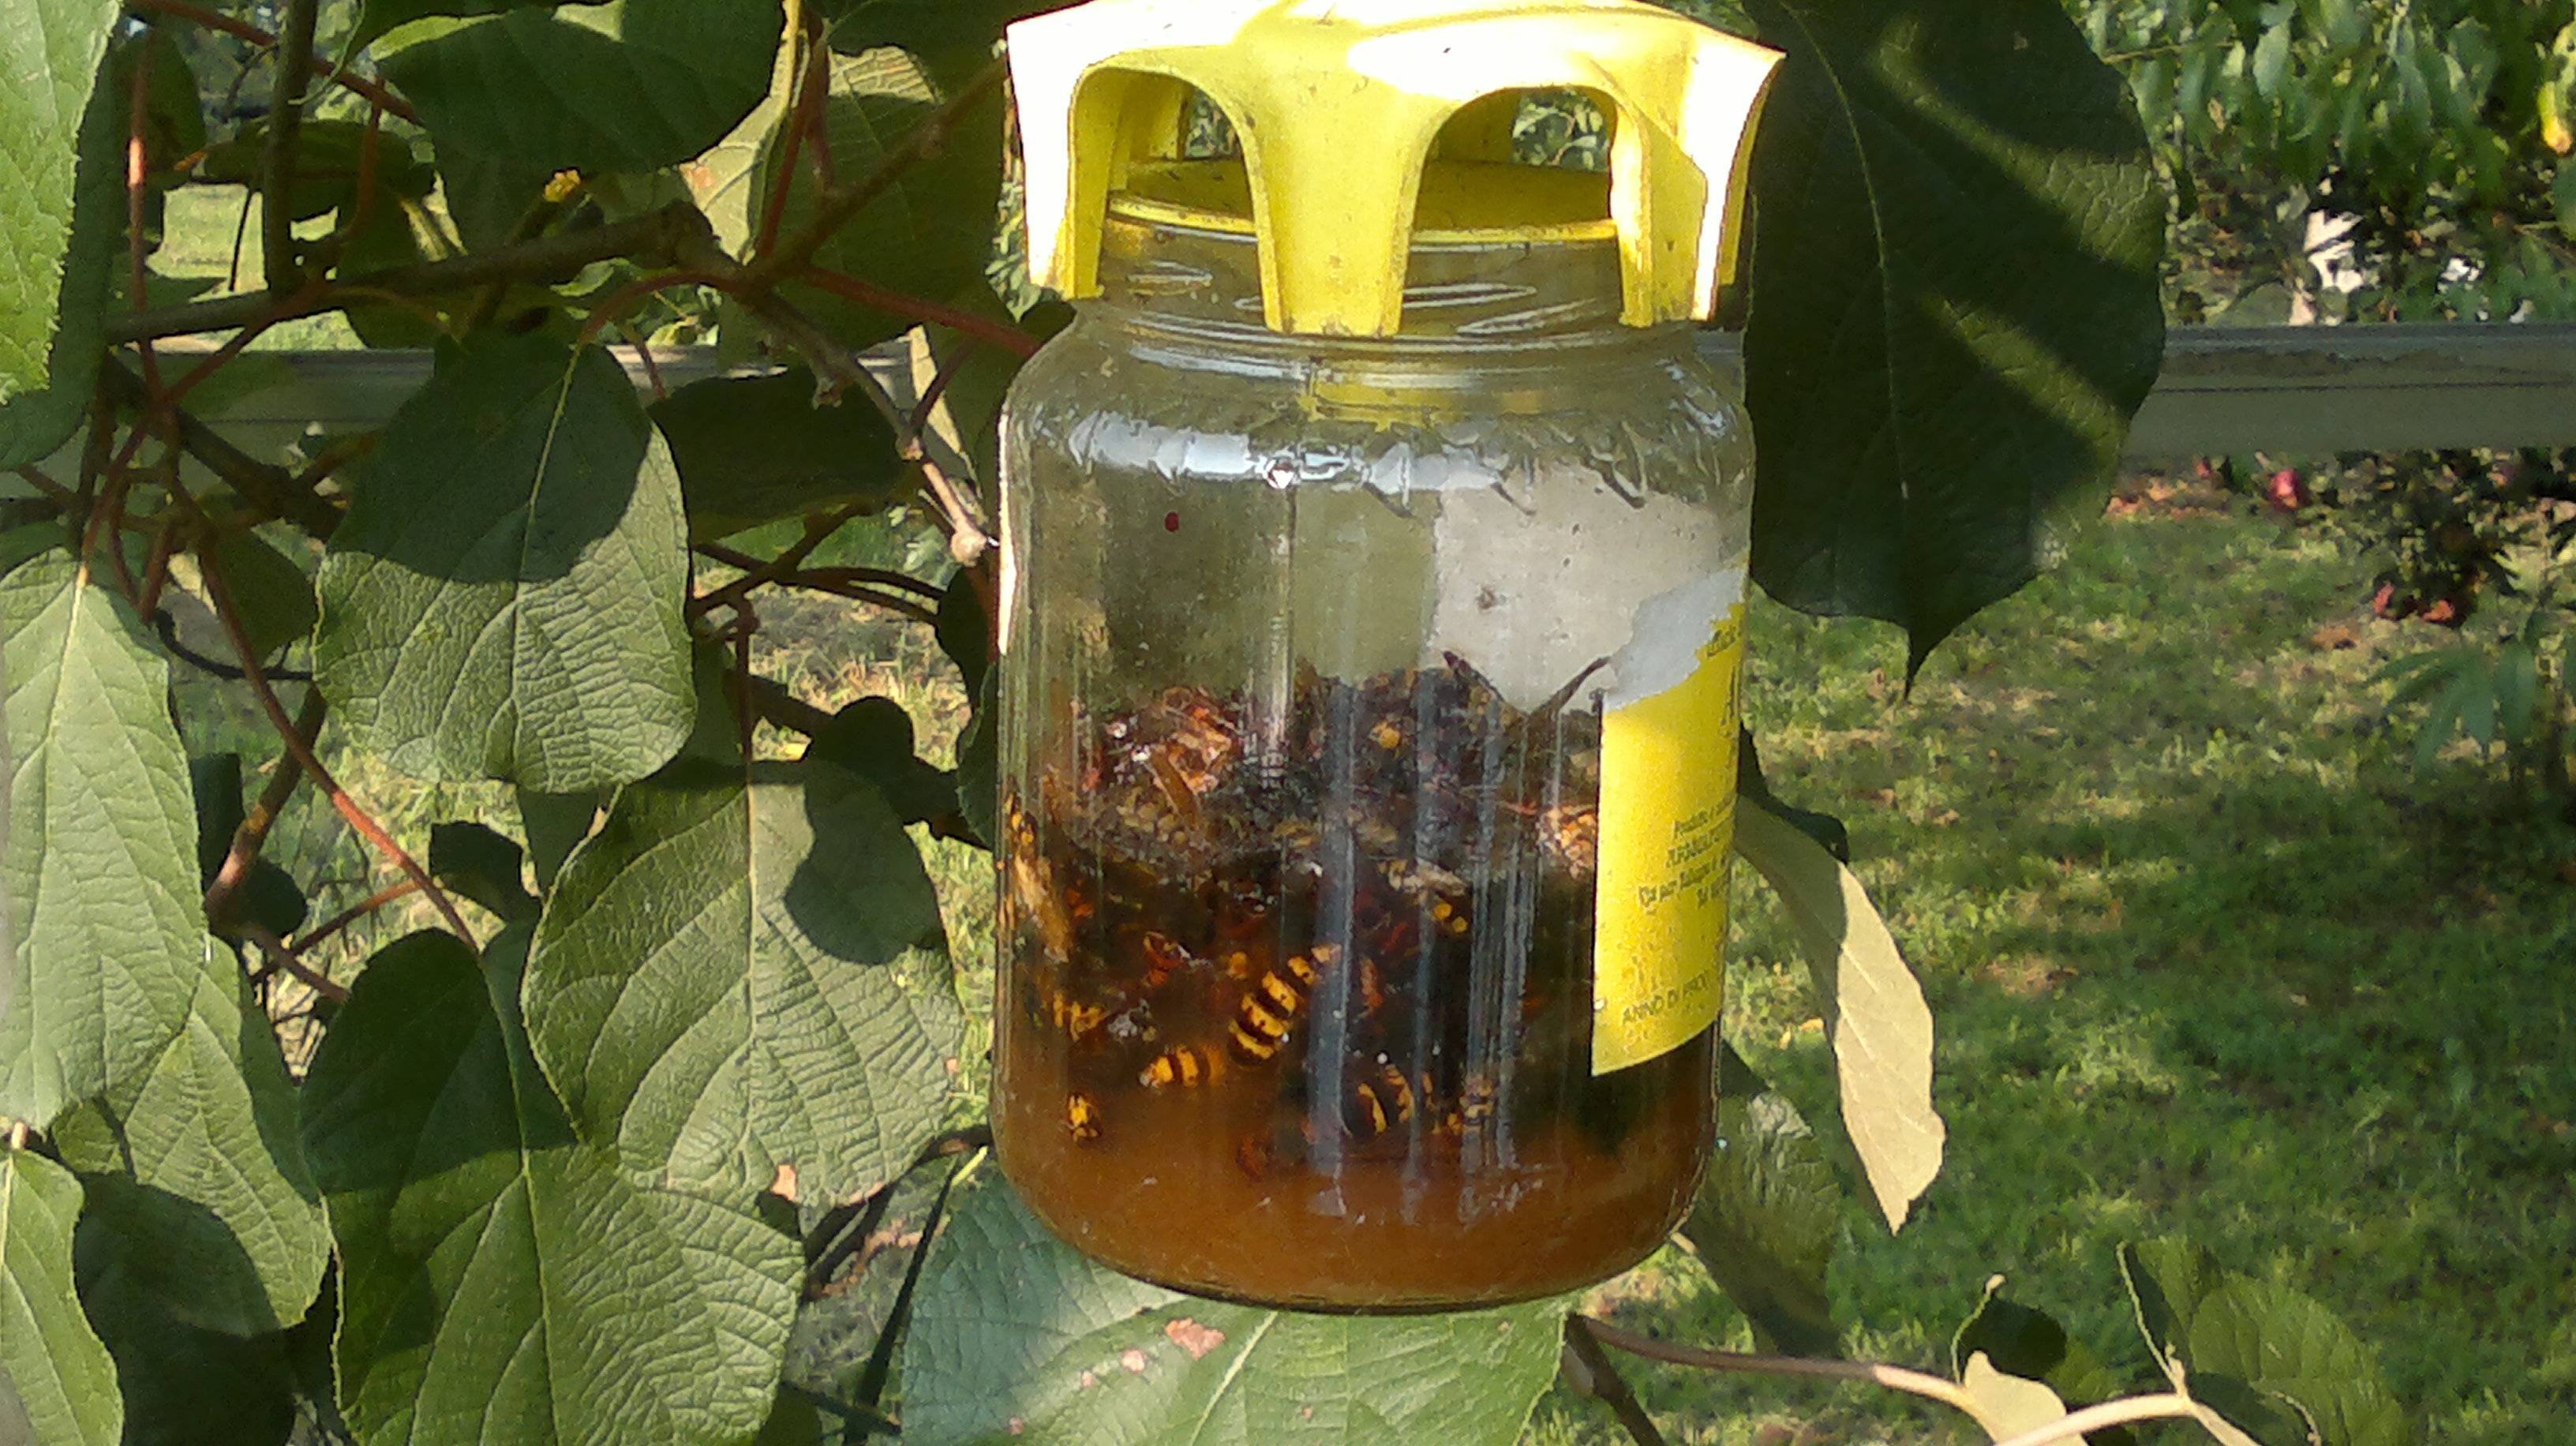 Выводим ос, шмелей и шершней из под крыши дома - советы по избавлению от опасных насекомых